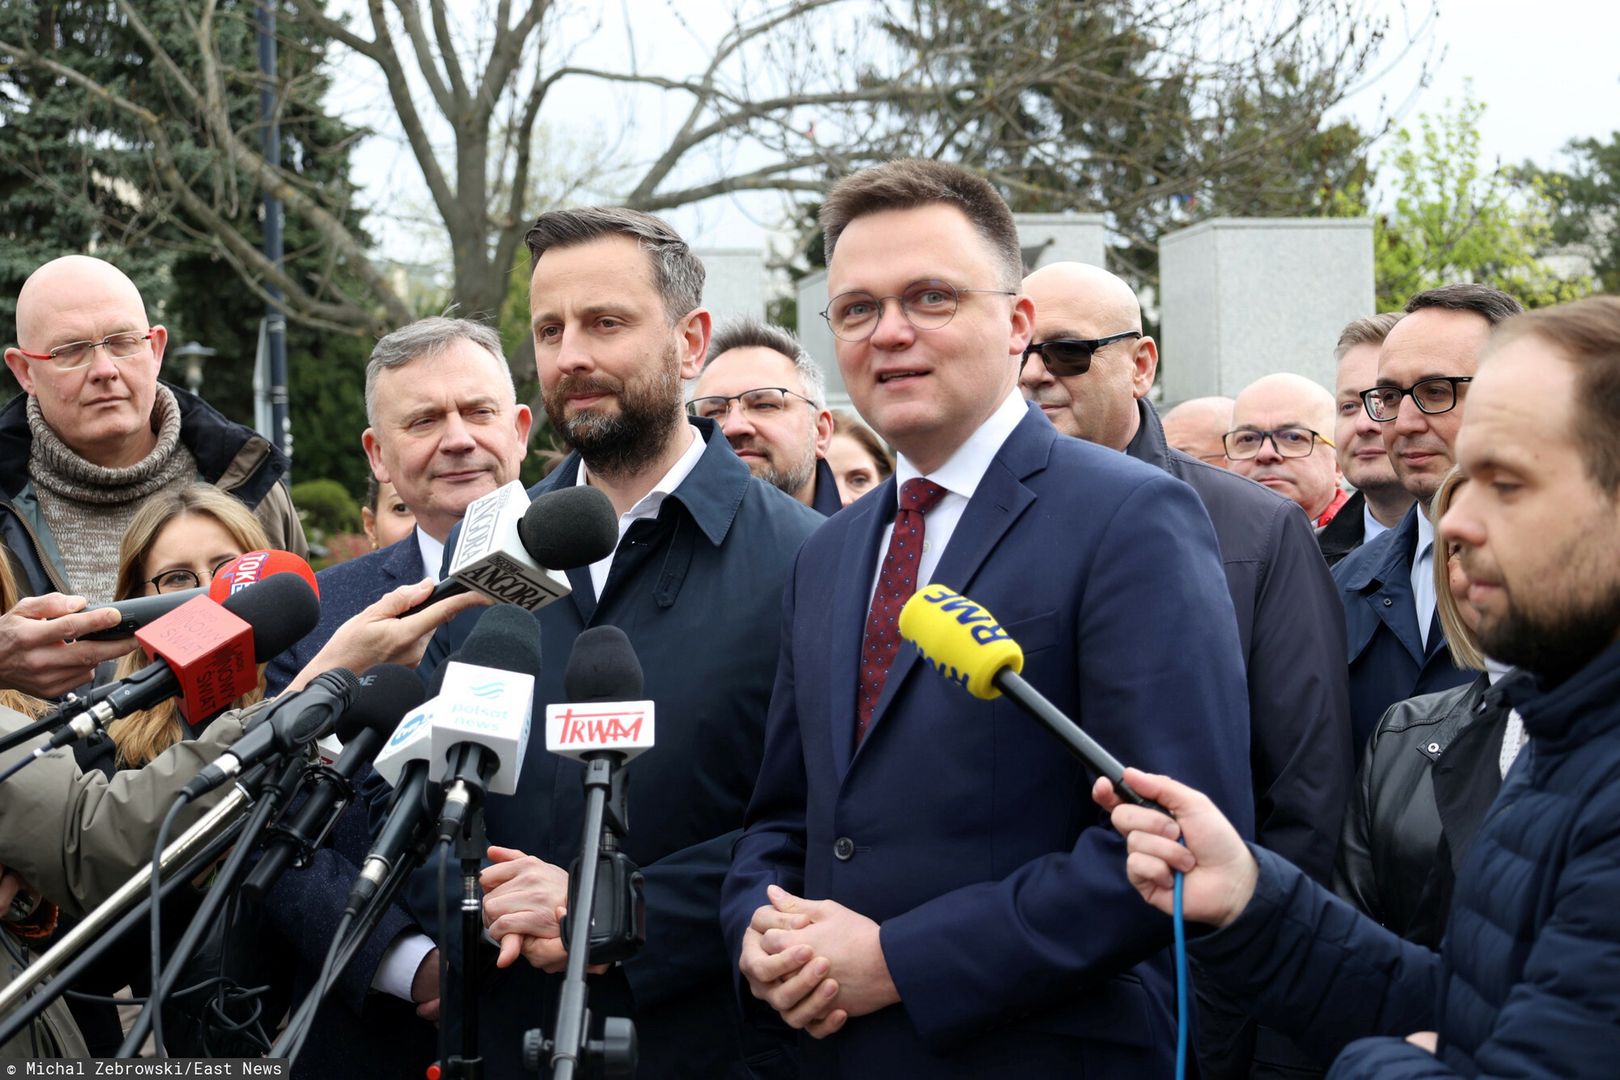 Nowy komitet wyborczy. Hołownia i Kosiniak-Kamysz pokazali nazwę